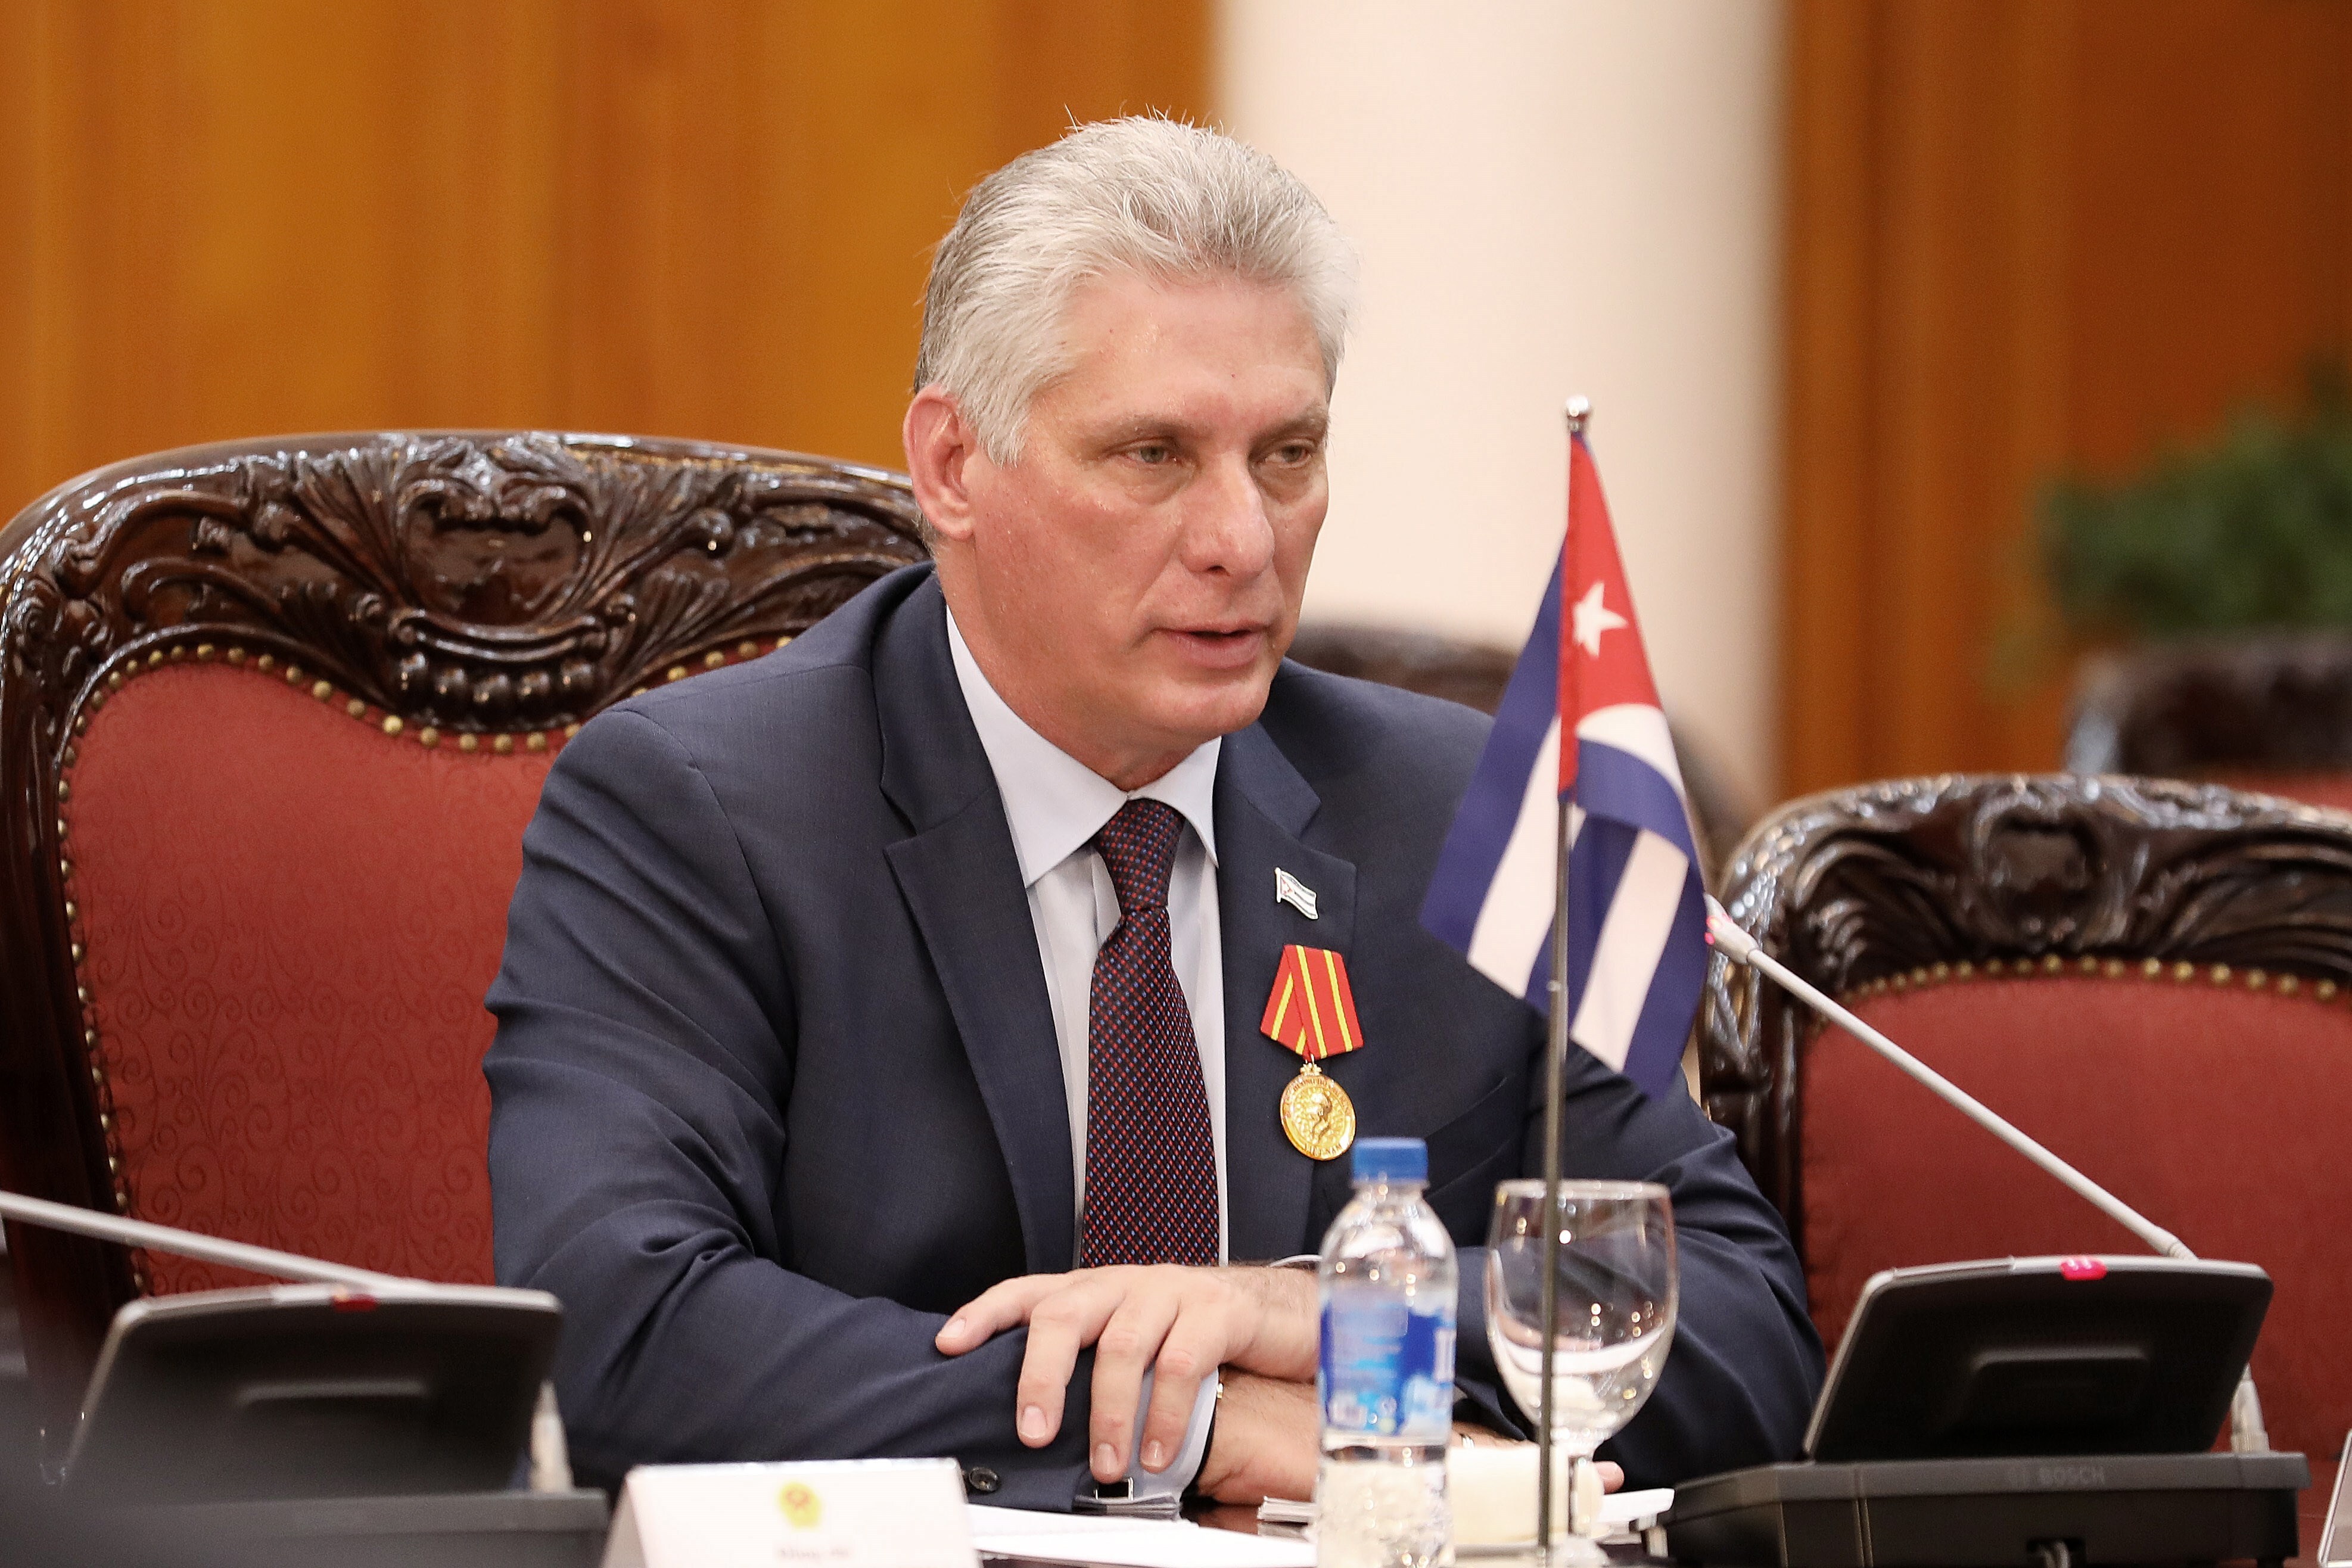 El presidente cubano, Miguel Díaz-Canel. EFE/Luong Thai Linh/Pool/Archivo
